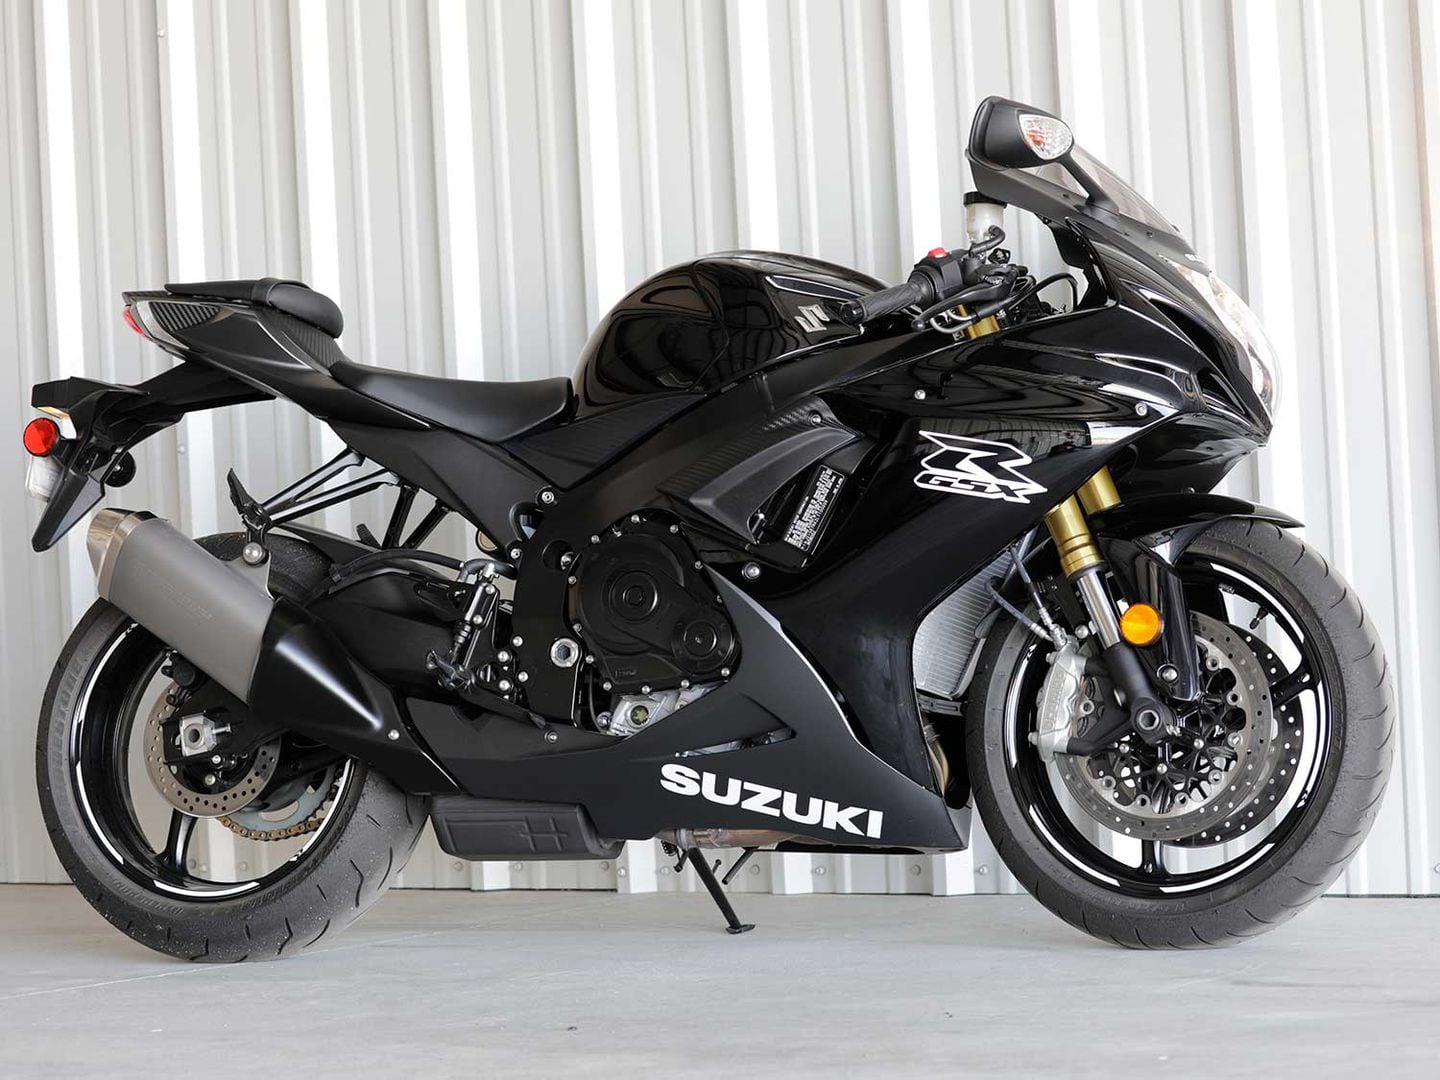 2020 Suzuki GSXR750 MC Commute Review Motorcyclist